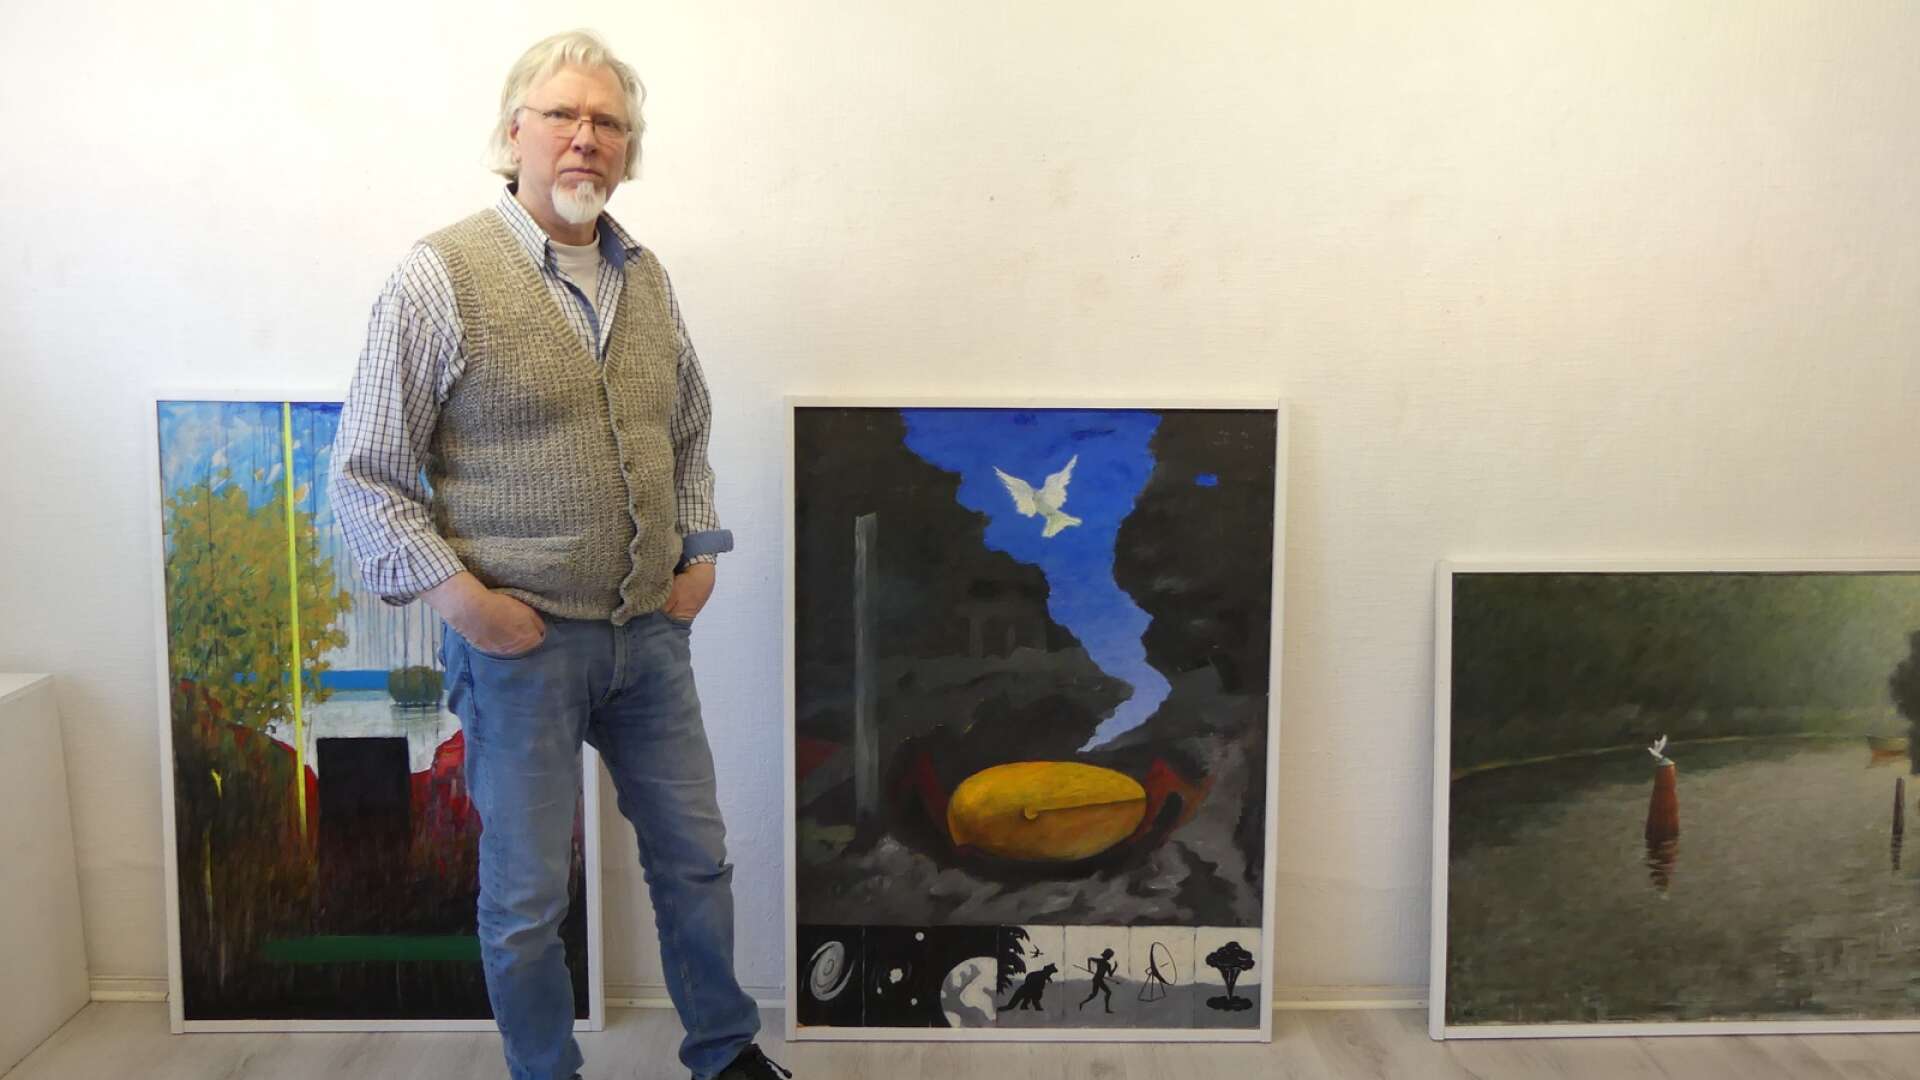 Konstnären Håkan Erkenhagen fån Svanskog ställer ut i Galleri 2